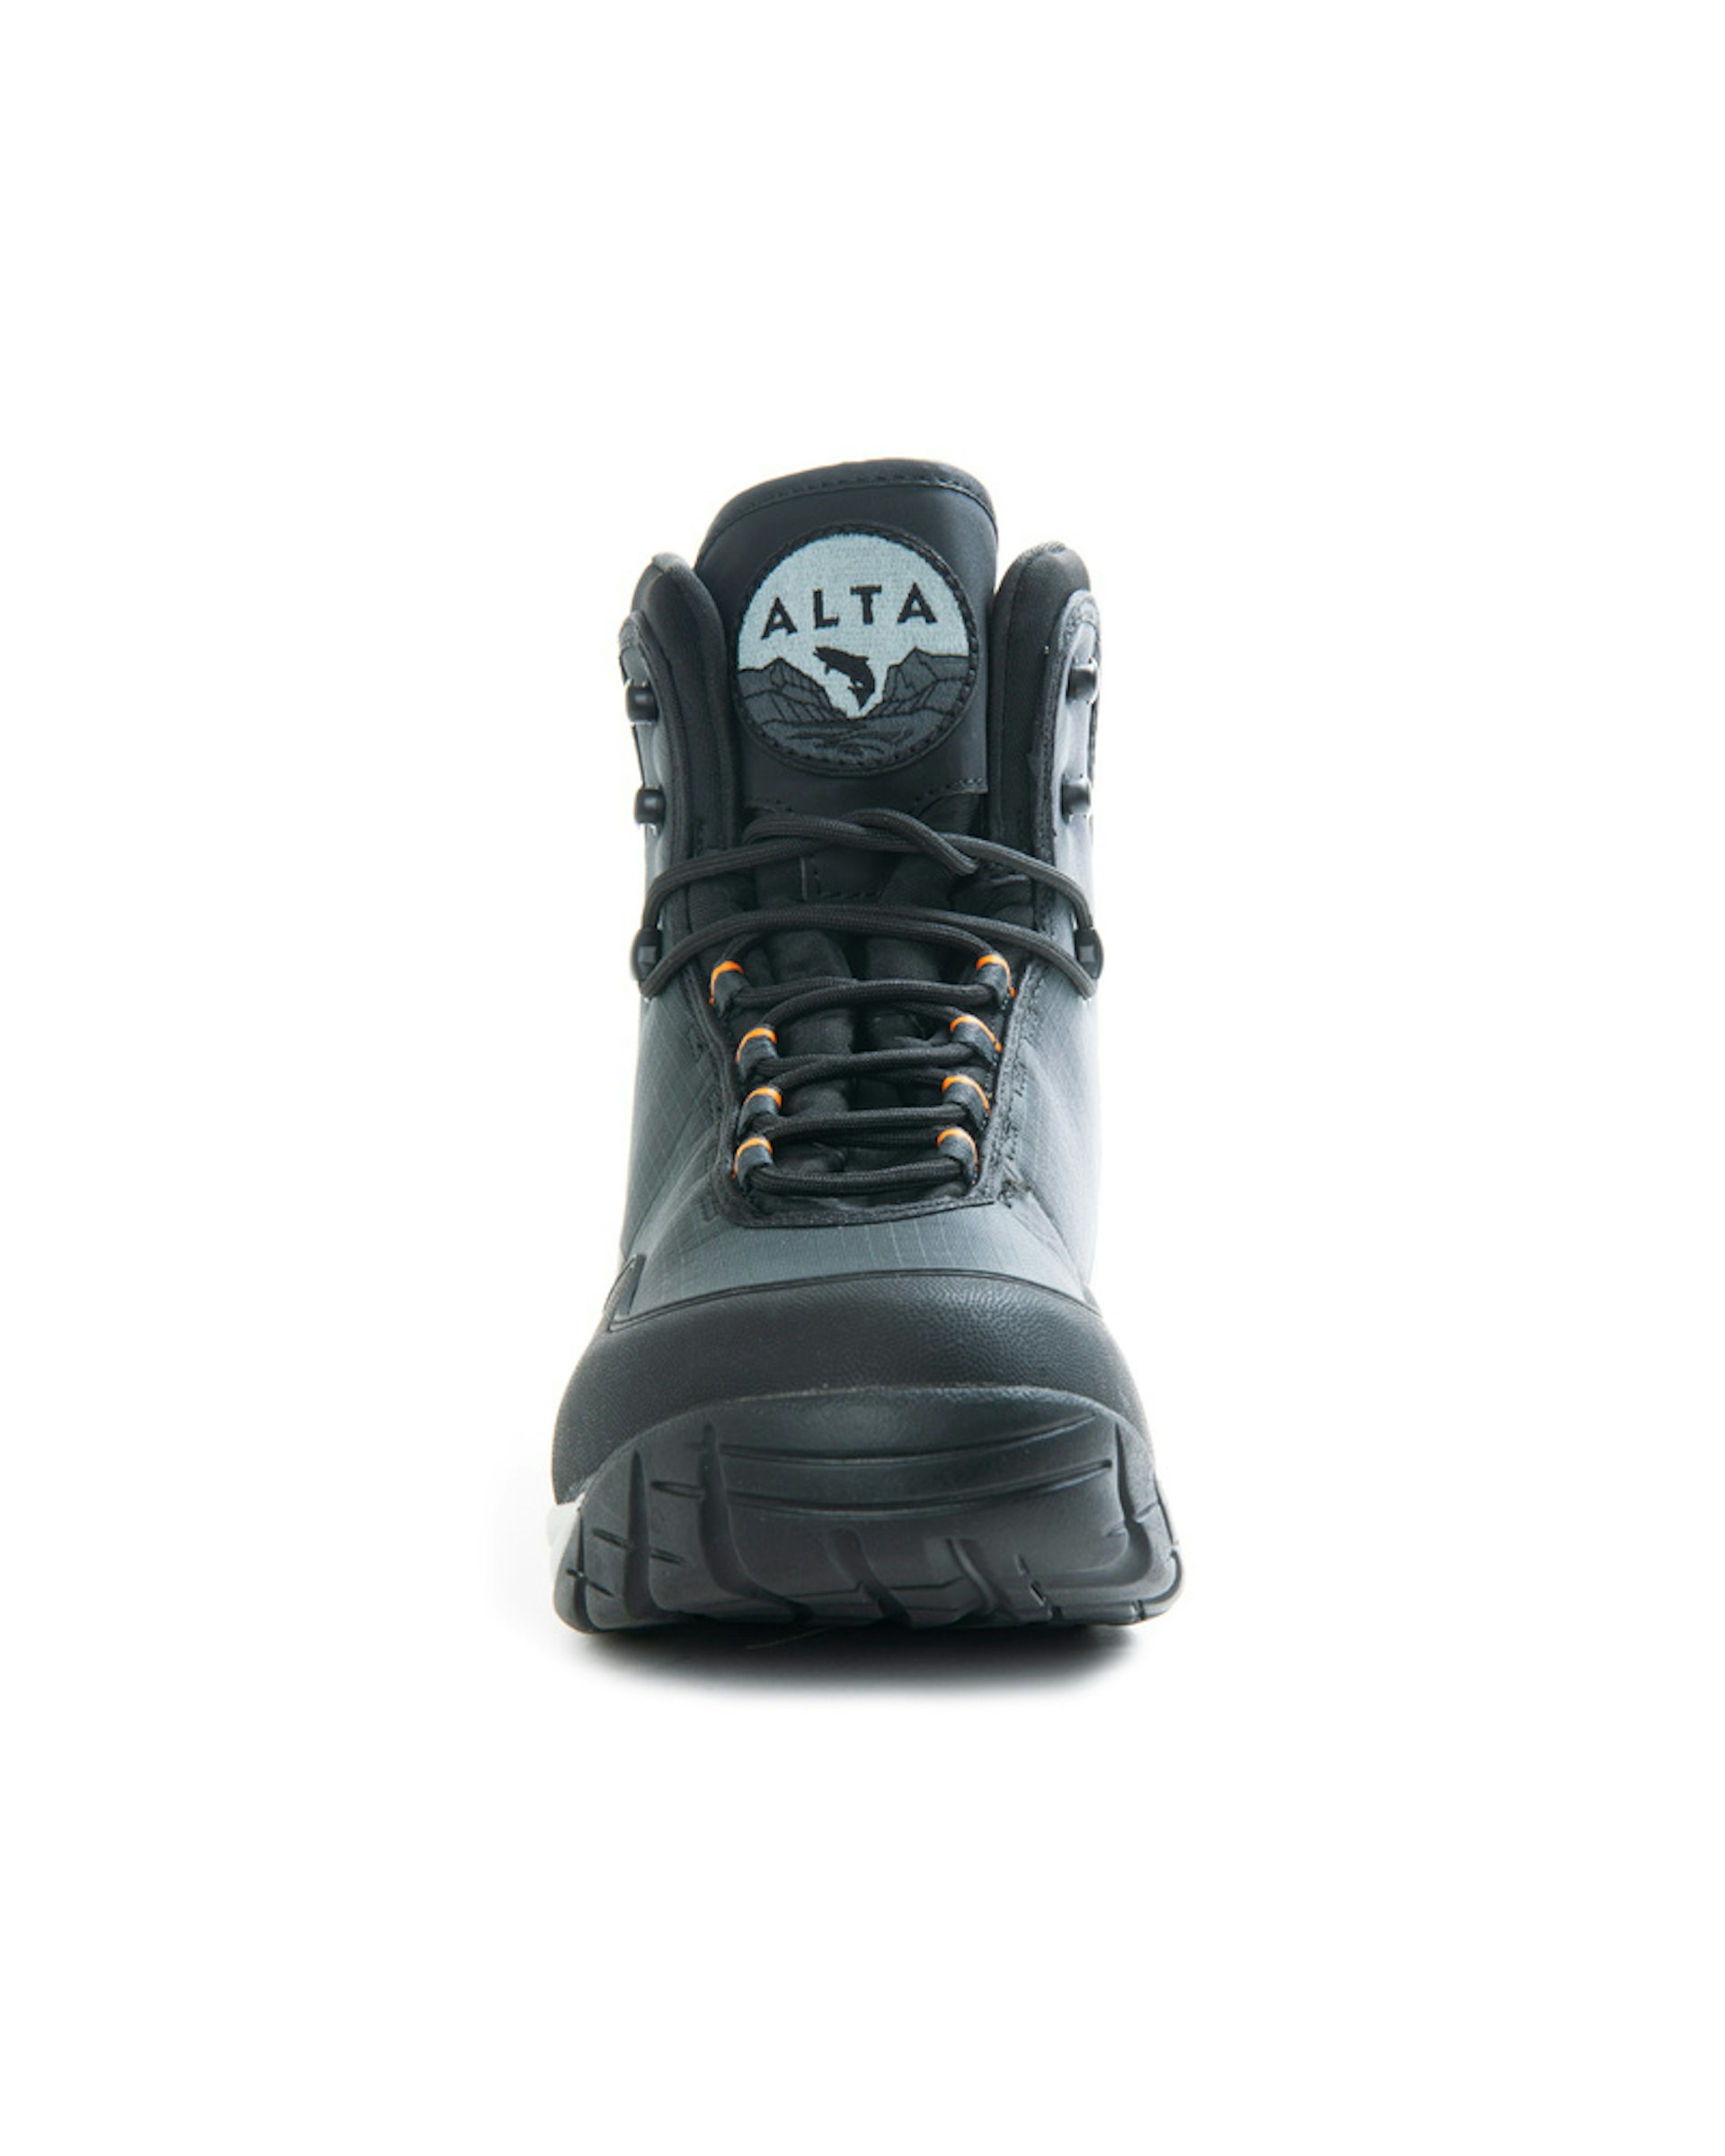 Alta NGx Boot Vibram US9/EUR42/UK8 (bild 4 av 6)